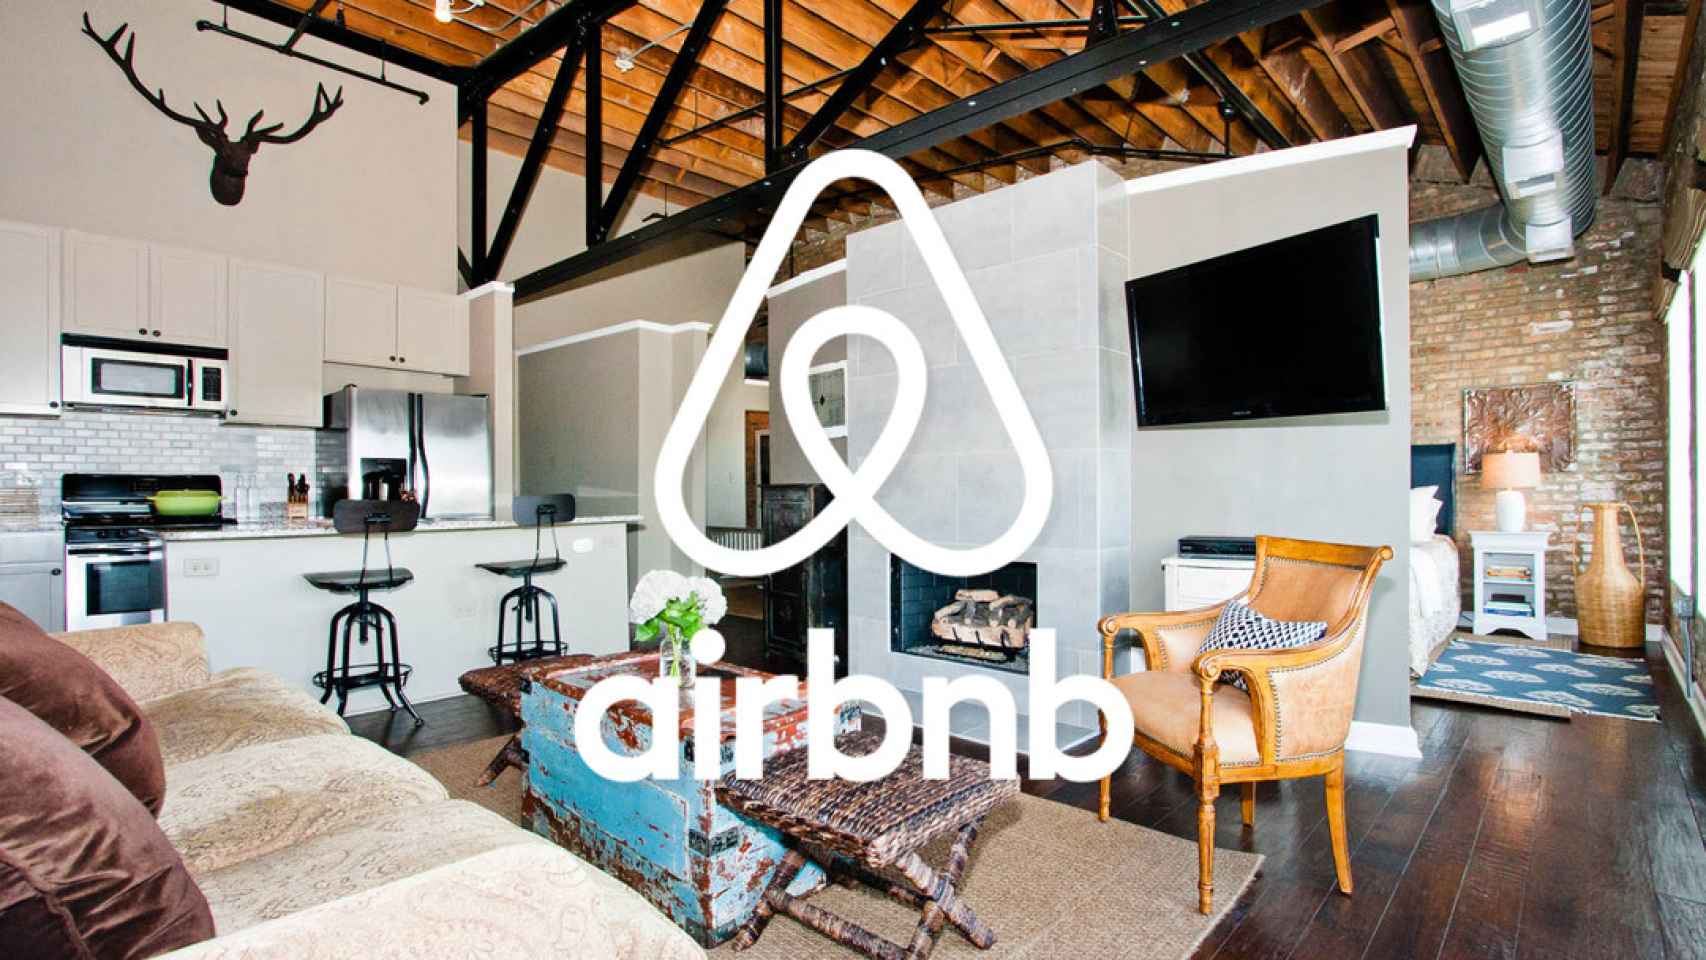 La compañía de alquiler turístico Airbnb planea salir a Bolsa en 2020.